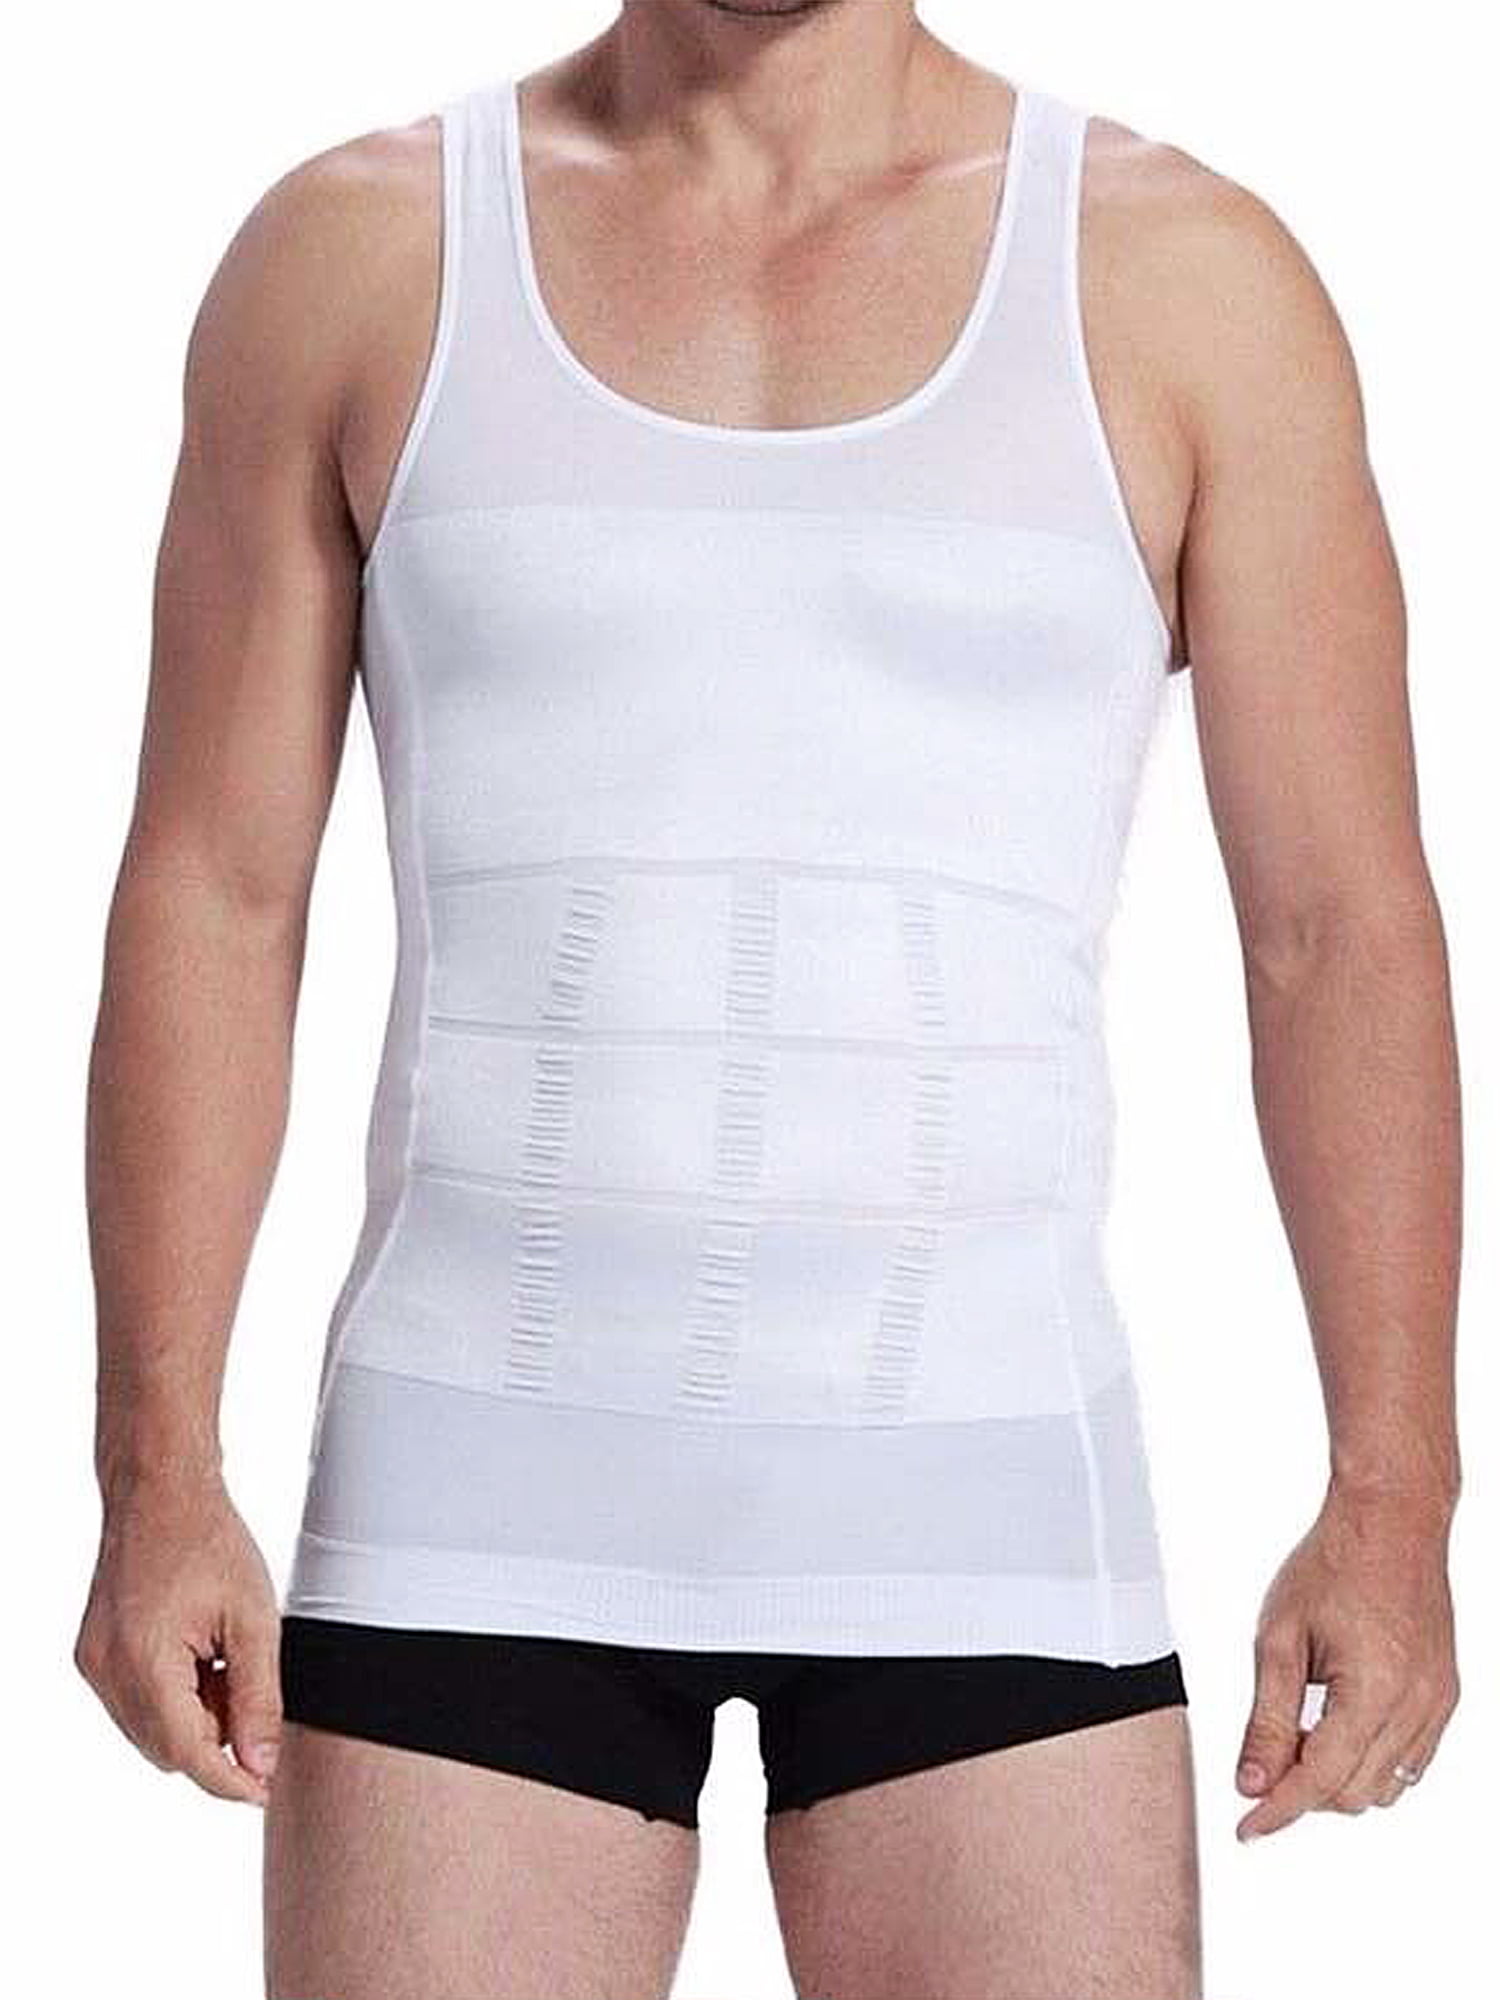 Ultra Lift Hommes compressin Shirt Gym sudation Débardeur Sous-vêtements Débardeur Body Shaper 